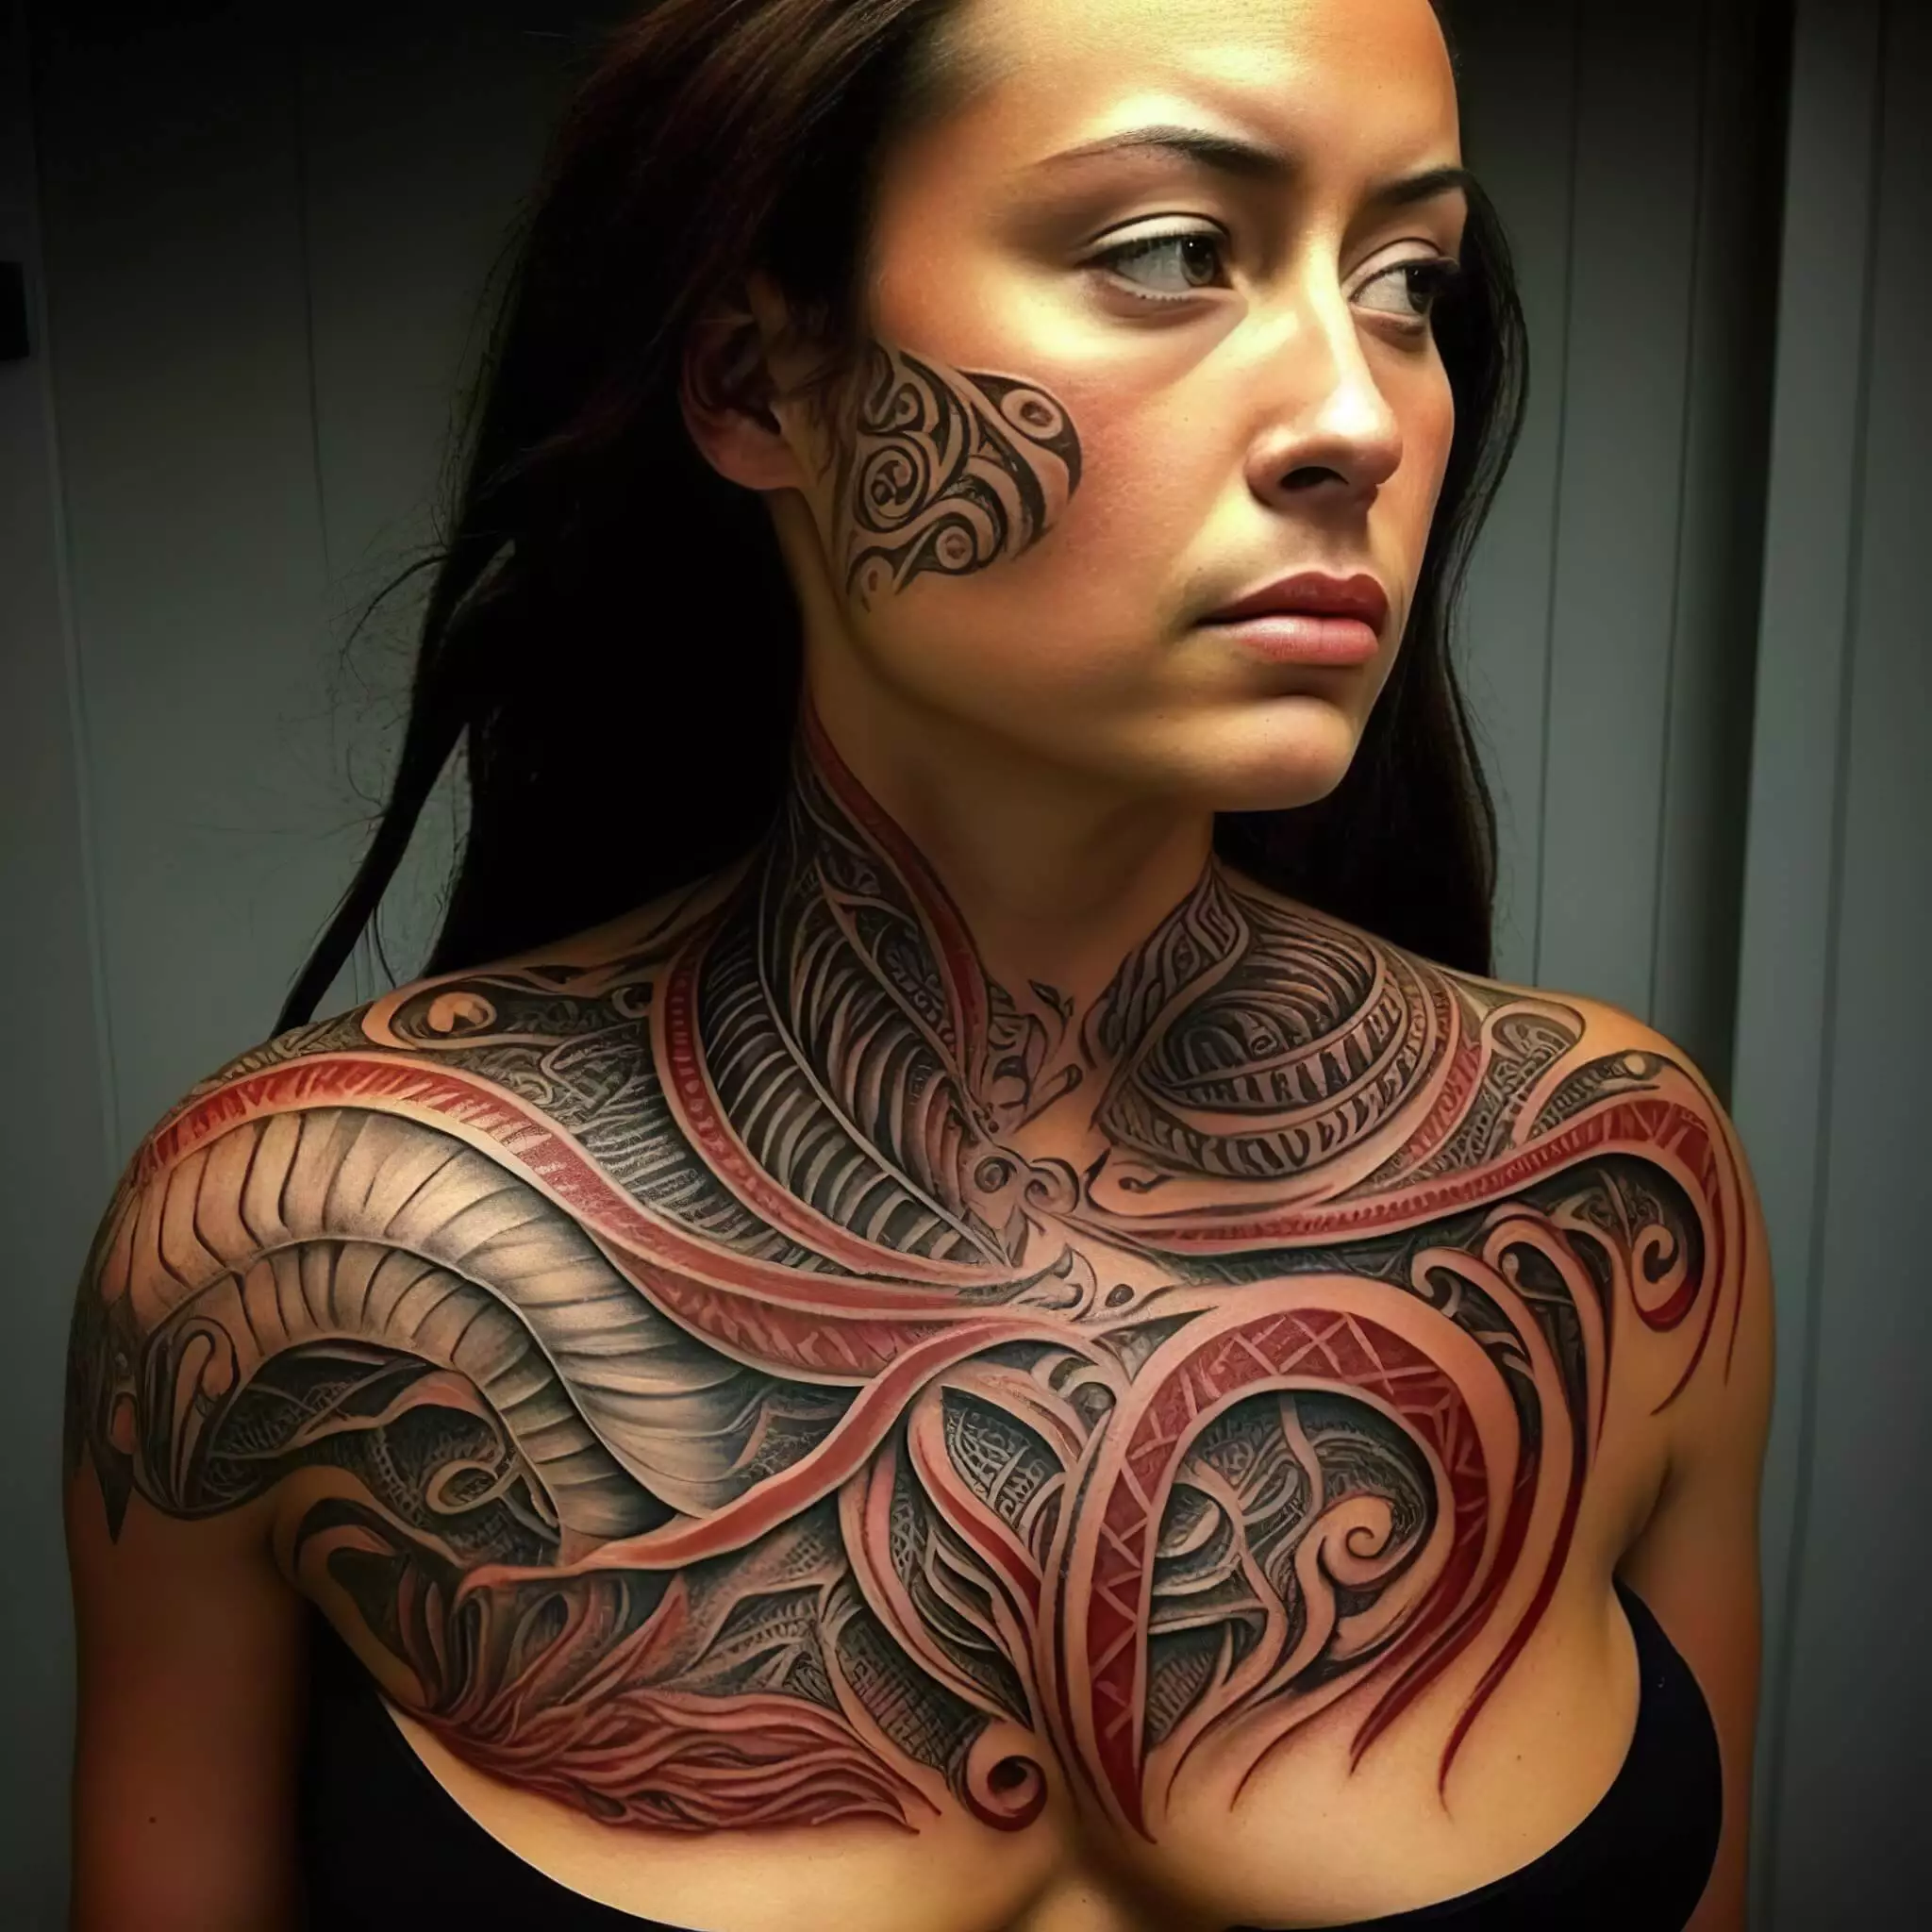 Tribal-Maori-Chestpiece: Einzigartiges Tattoo-Design auf der Brust einer Frau